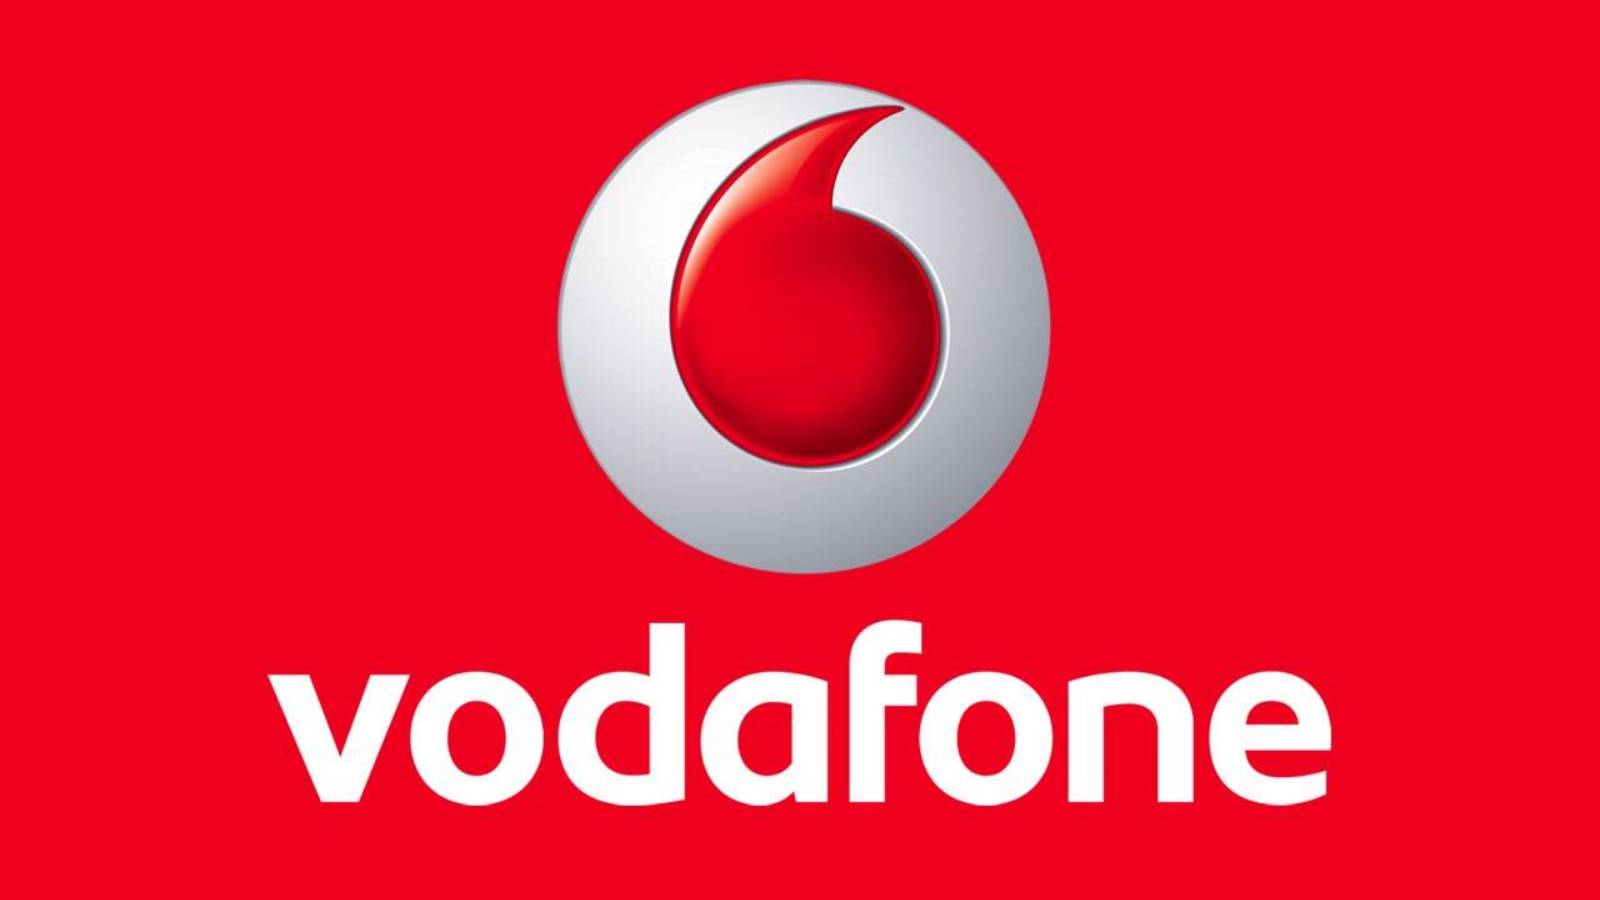 Vodafone vertrouwen